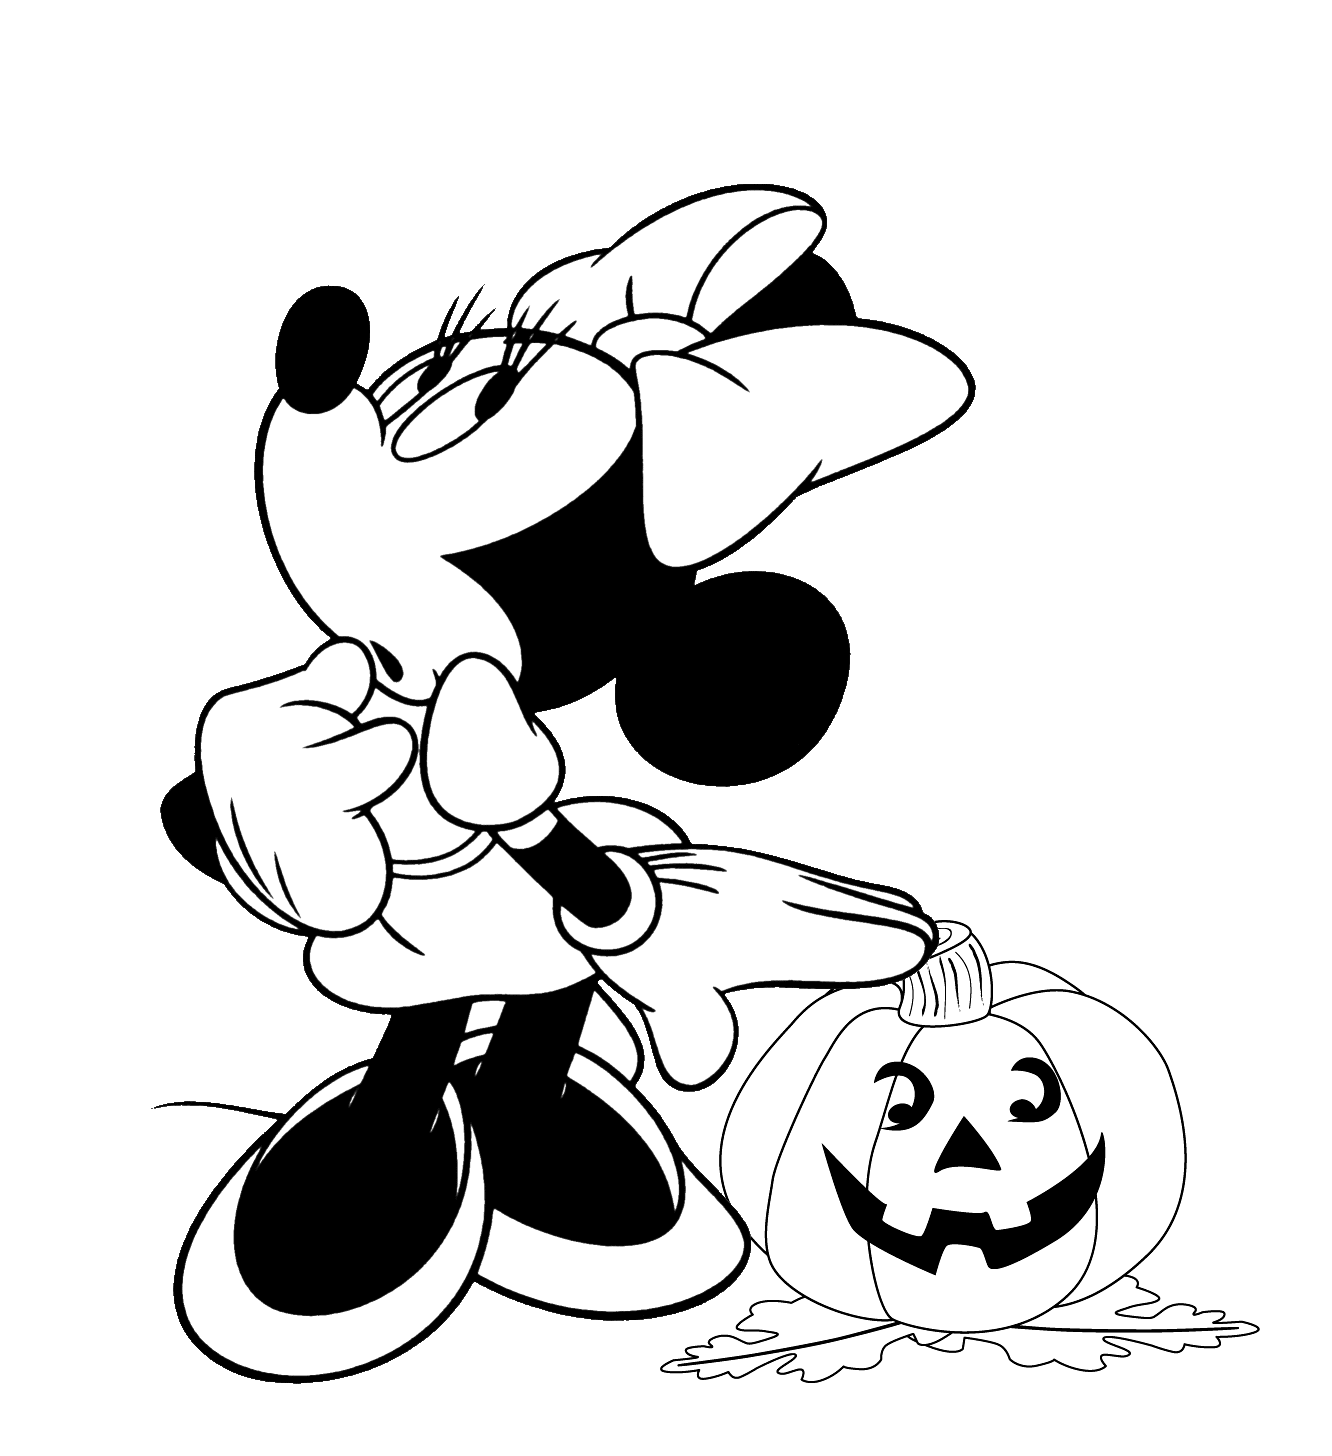 Minnie a peur de cette citrouille d'Halloween